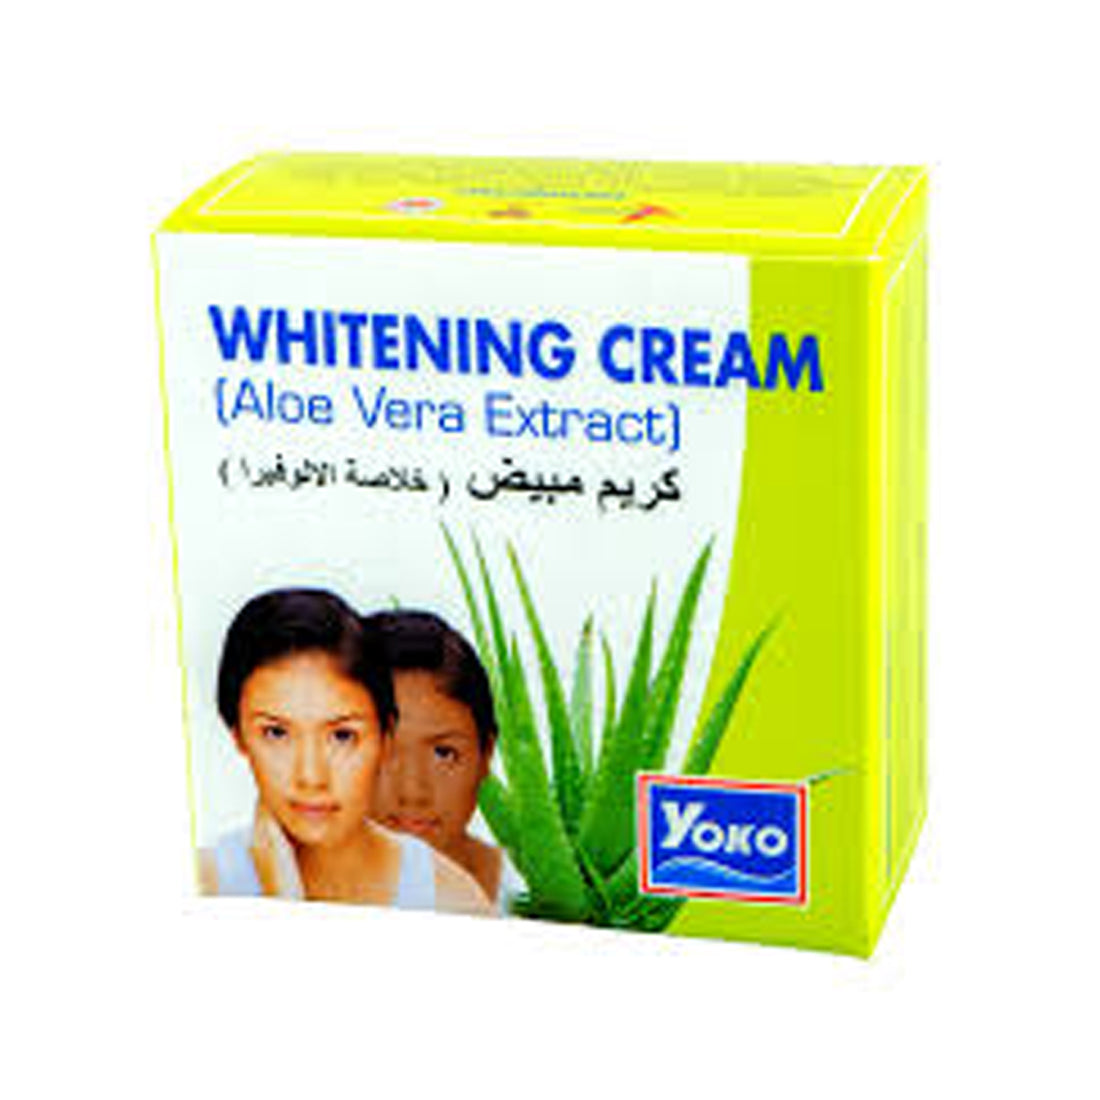 Yoko Fairness Whitening Cream Aloe Vera Extract 4gm